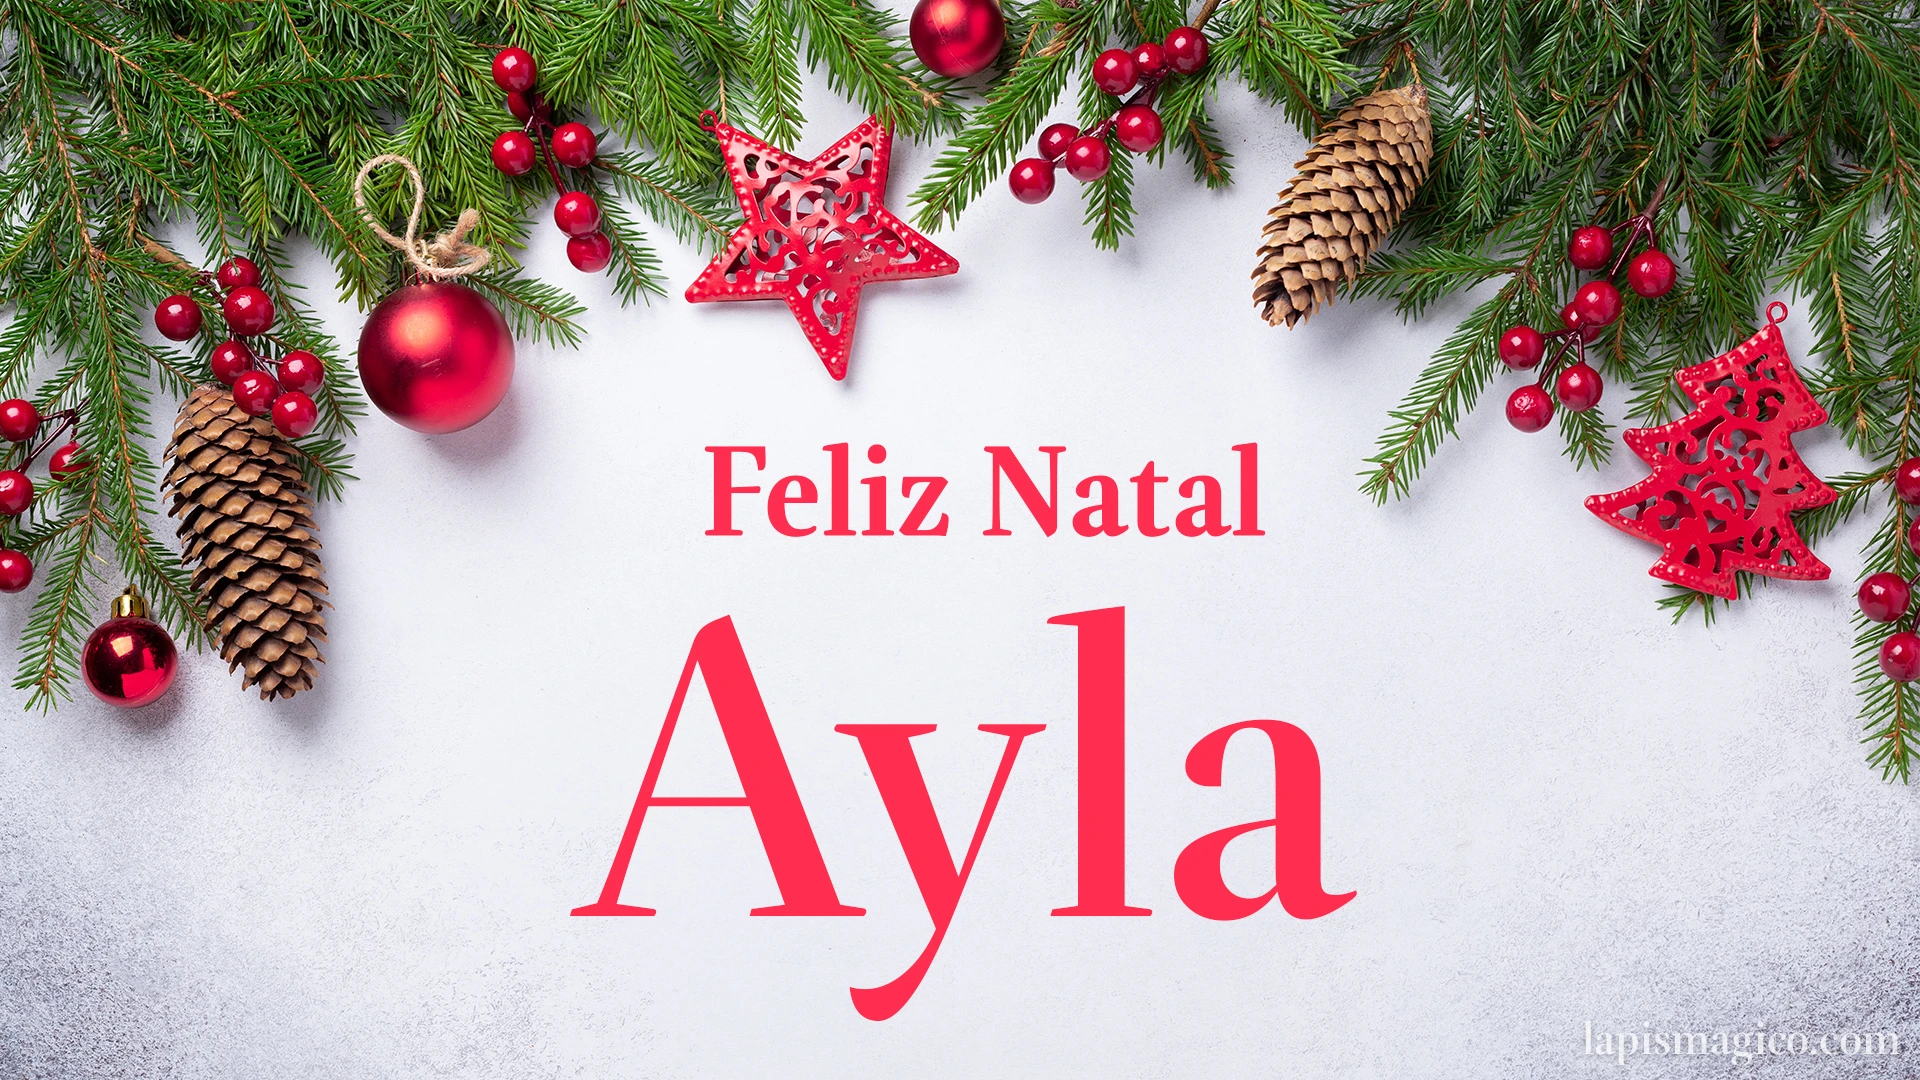 Oh Ayla, cinco postais de Feliz Natal Postal com o teu nome